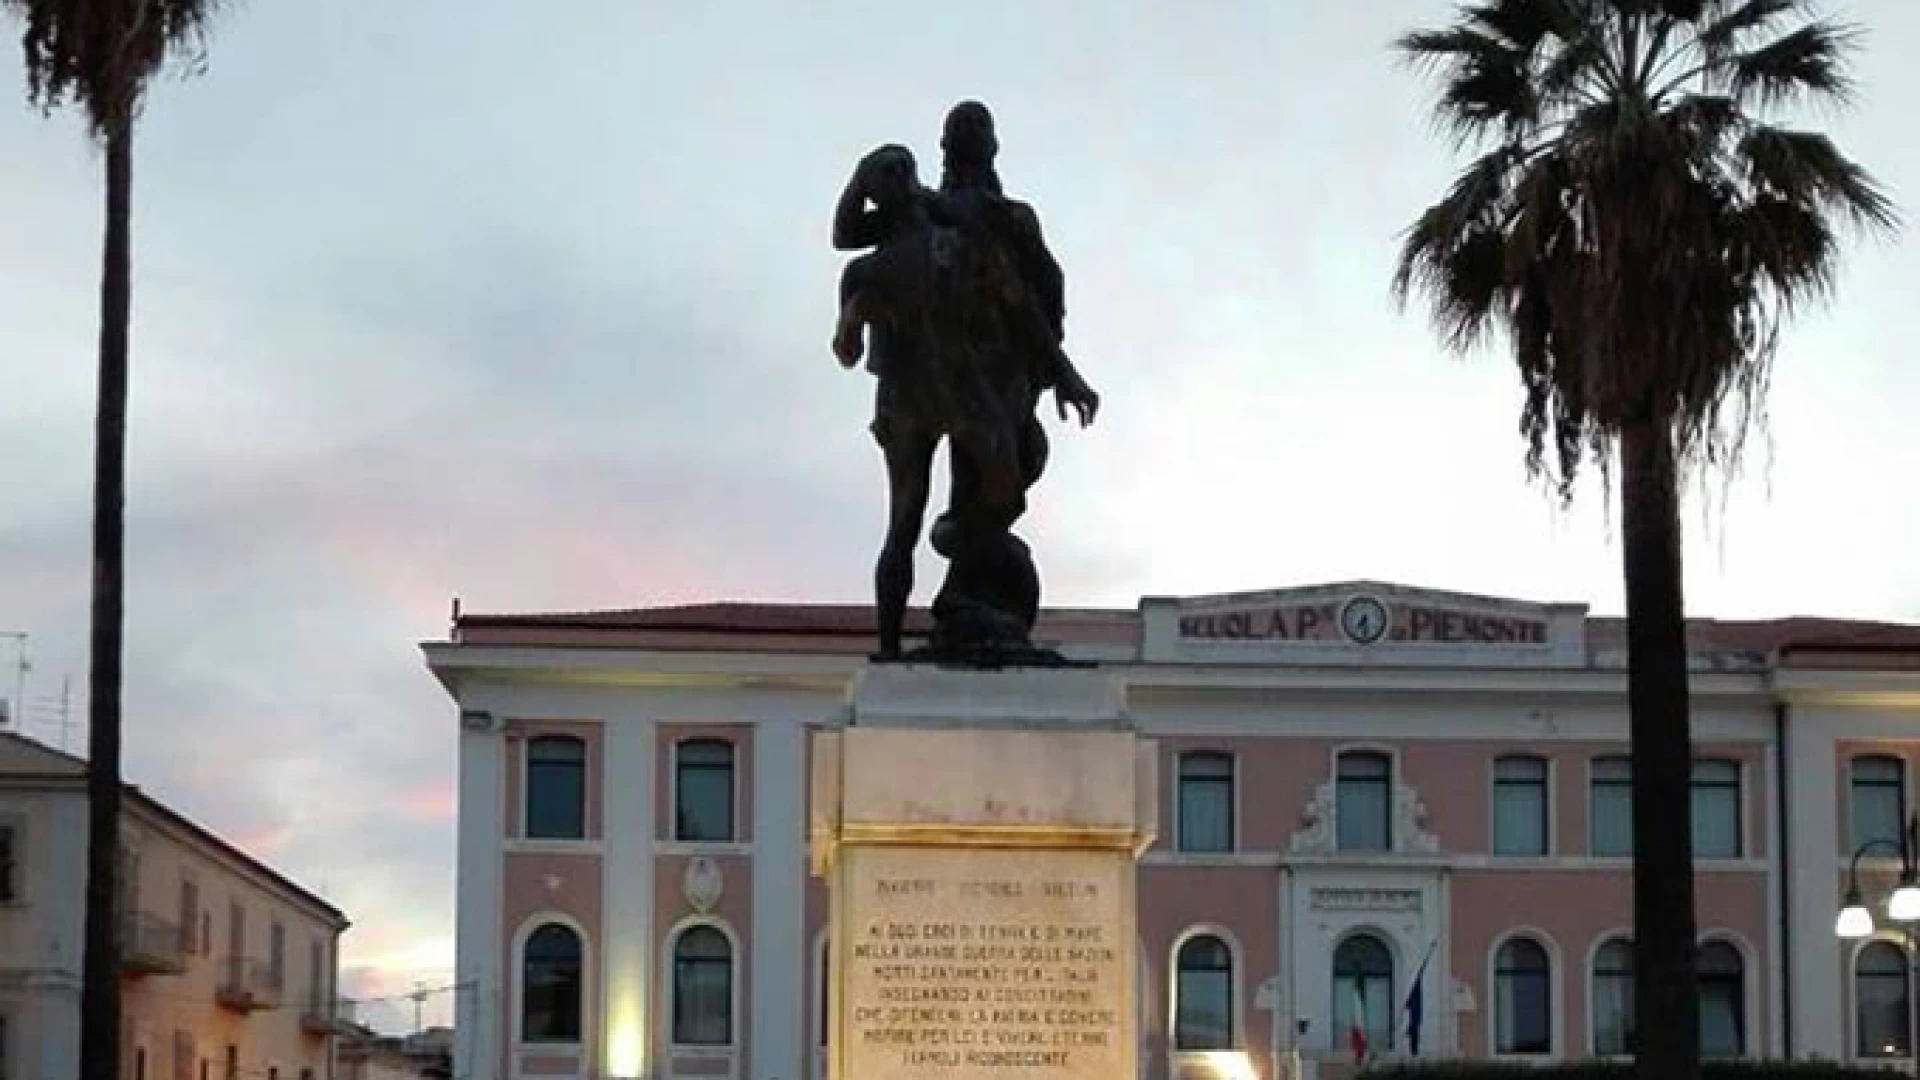 Termoli: illuminazione al monumento ai Caduti, CasaPound esprime apprezzamento: “accolta nostra proposta".